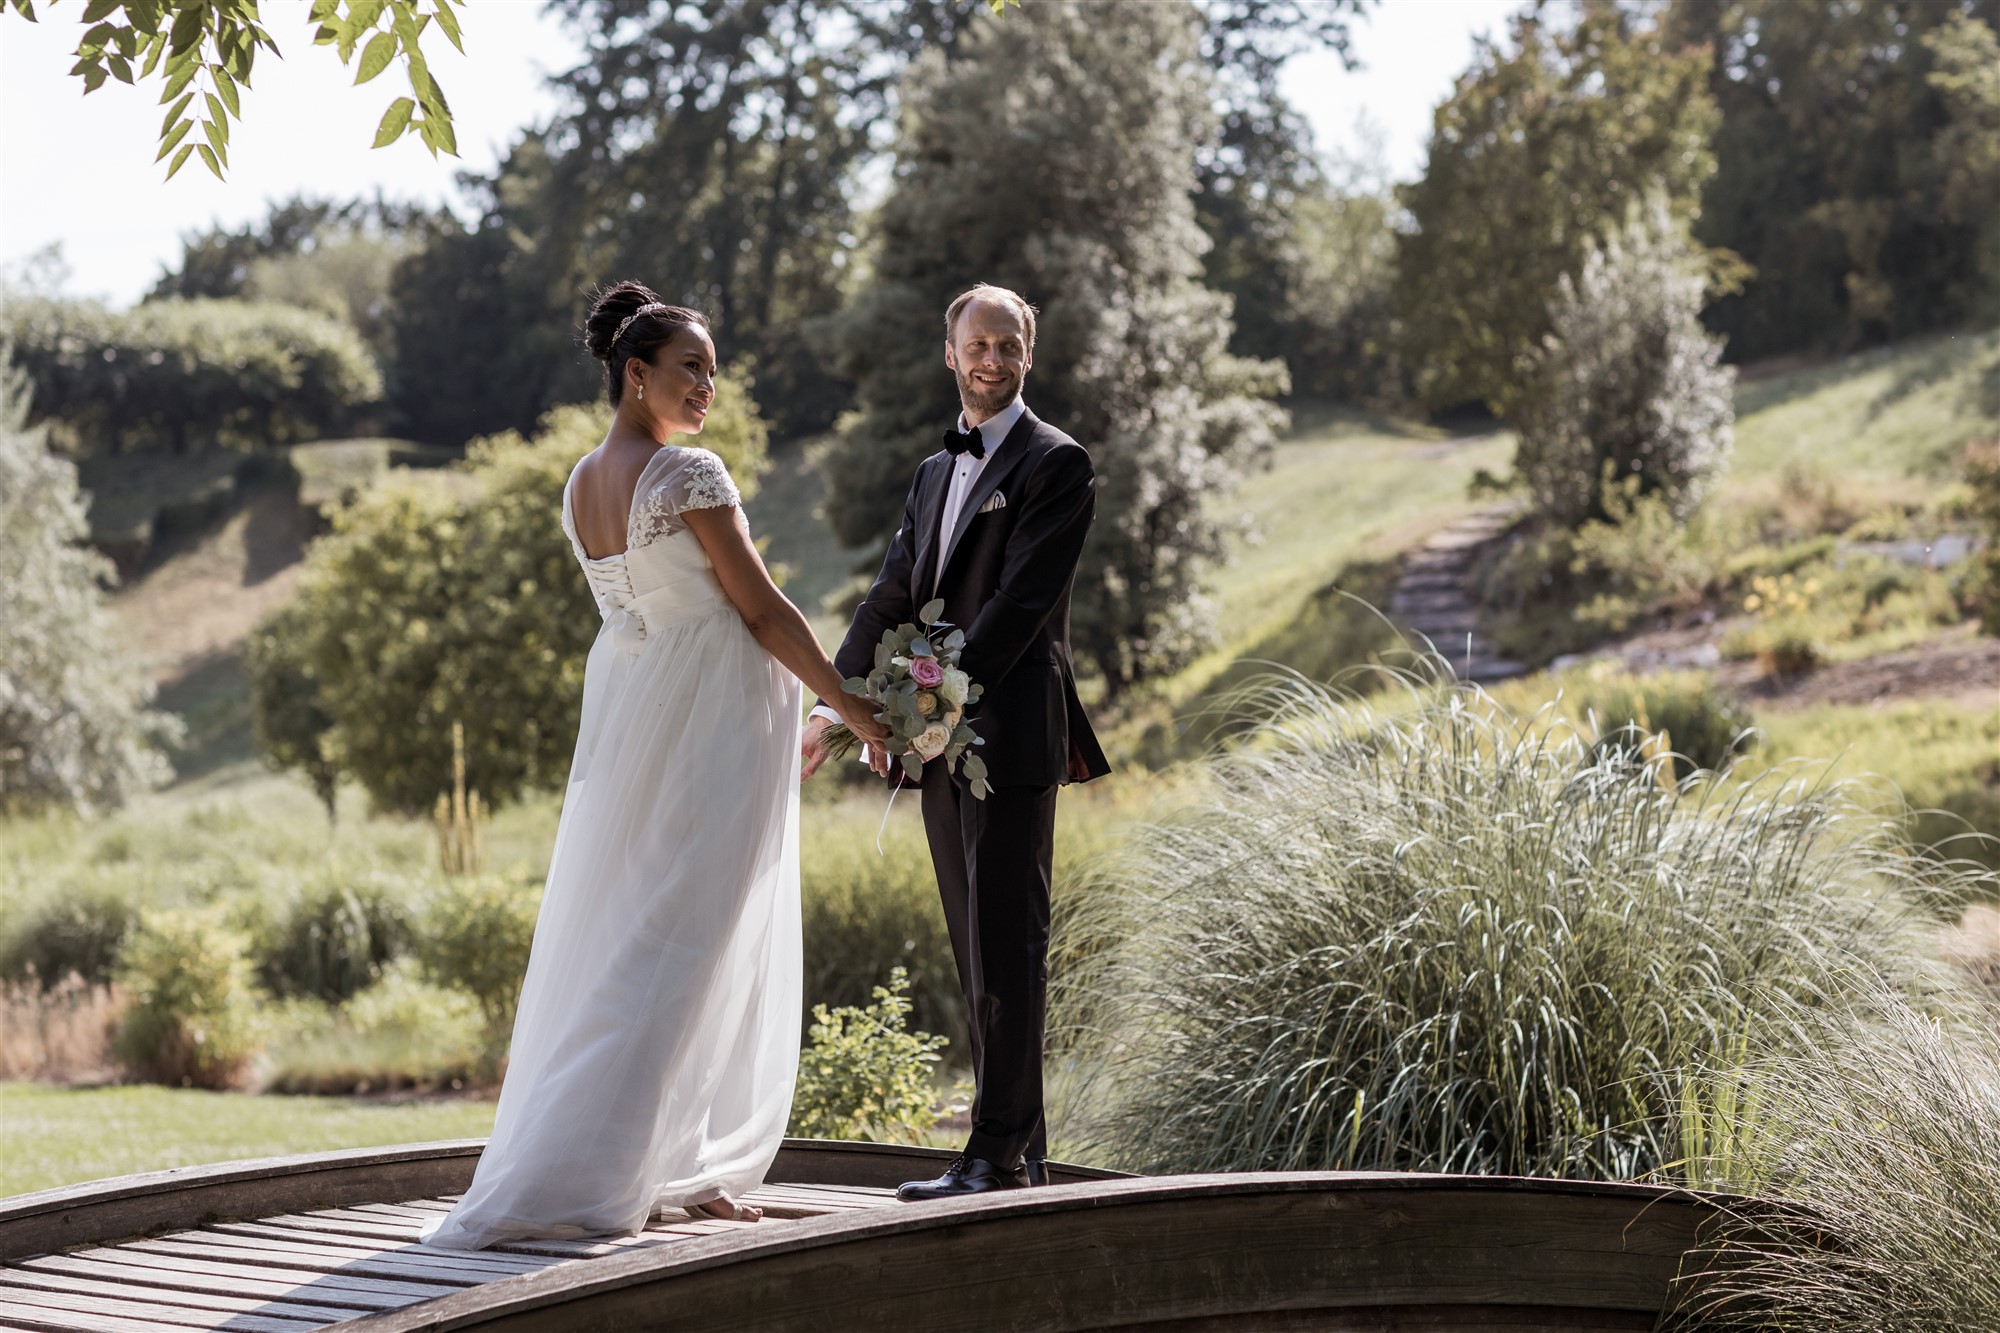 Brautpaarfotoshooting vor der Villa Merian in den Merian Gärten